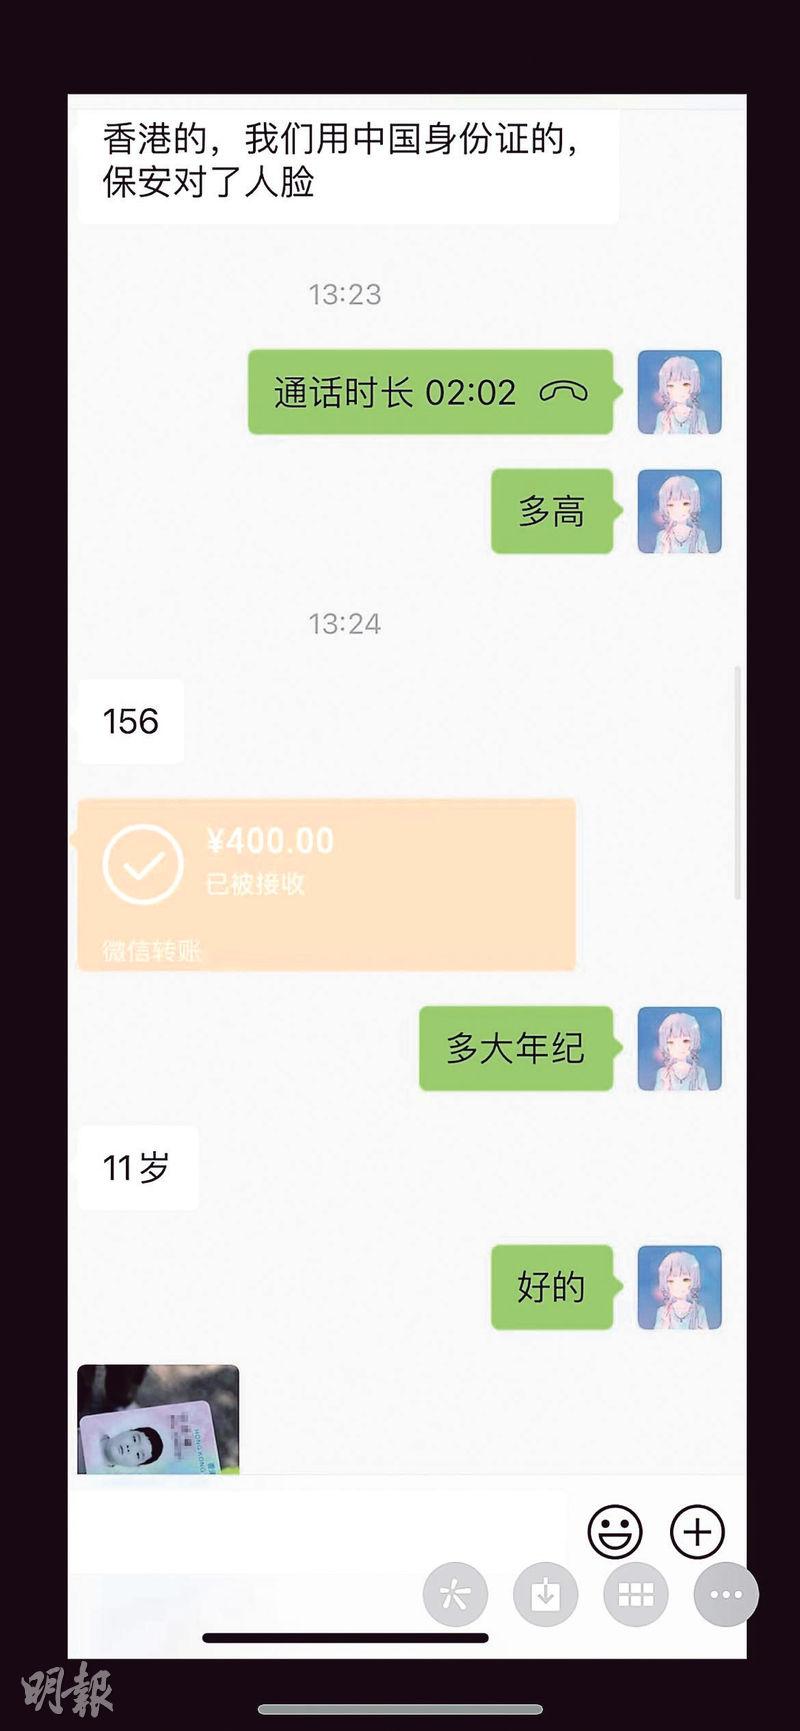 黃牛黨出示此前交易的微信對話截圖證明曾成功安排港台遊客入校，泄露一個男童的香港身分證一角。（對話截圖）